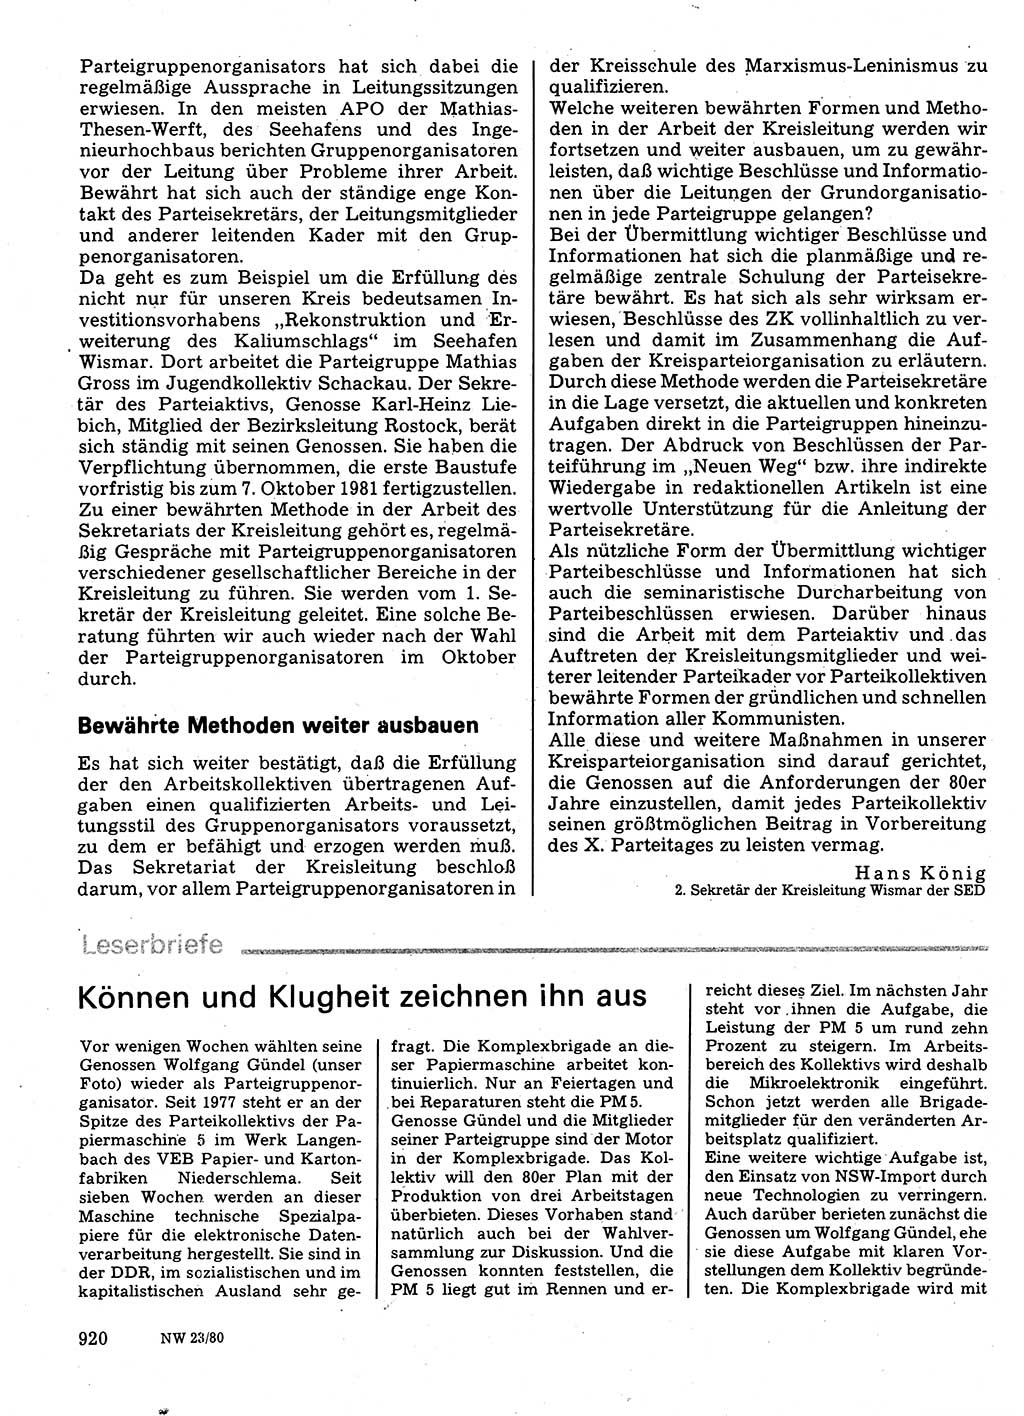 Neuer Weg (NW), Organ des Zentralkomitees (ZK) der SED (Sozialistische Einheitspartei Deutschlands) für Fragen des Parteilebens, 35. Jahrgang [Deutsche Demokratische Republik (DDR)] 1980, Seite 920 (NW ZK SED DDR 1980, S. 920)